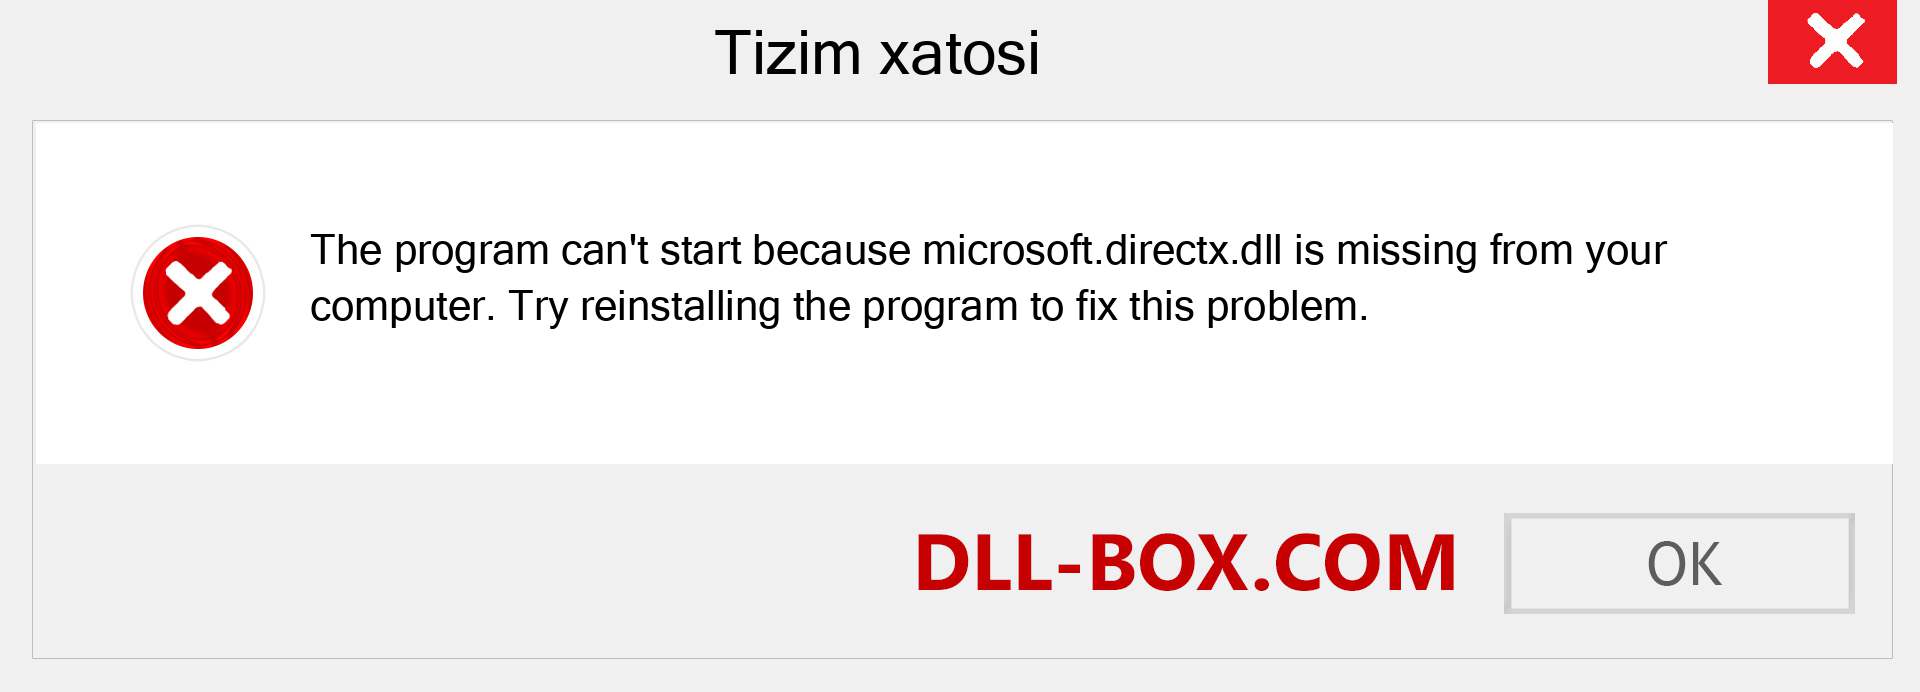 microsoft.directx.dll fayli yo'qolganmi?. Windows 7, 8, 10 uchun yuklab olish - Windowsda microsoft.directx dll etishmayotgan xatoni tuzating, rasmlar, rasmlar